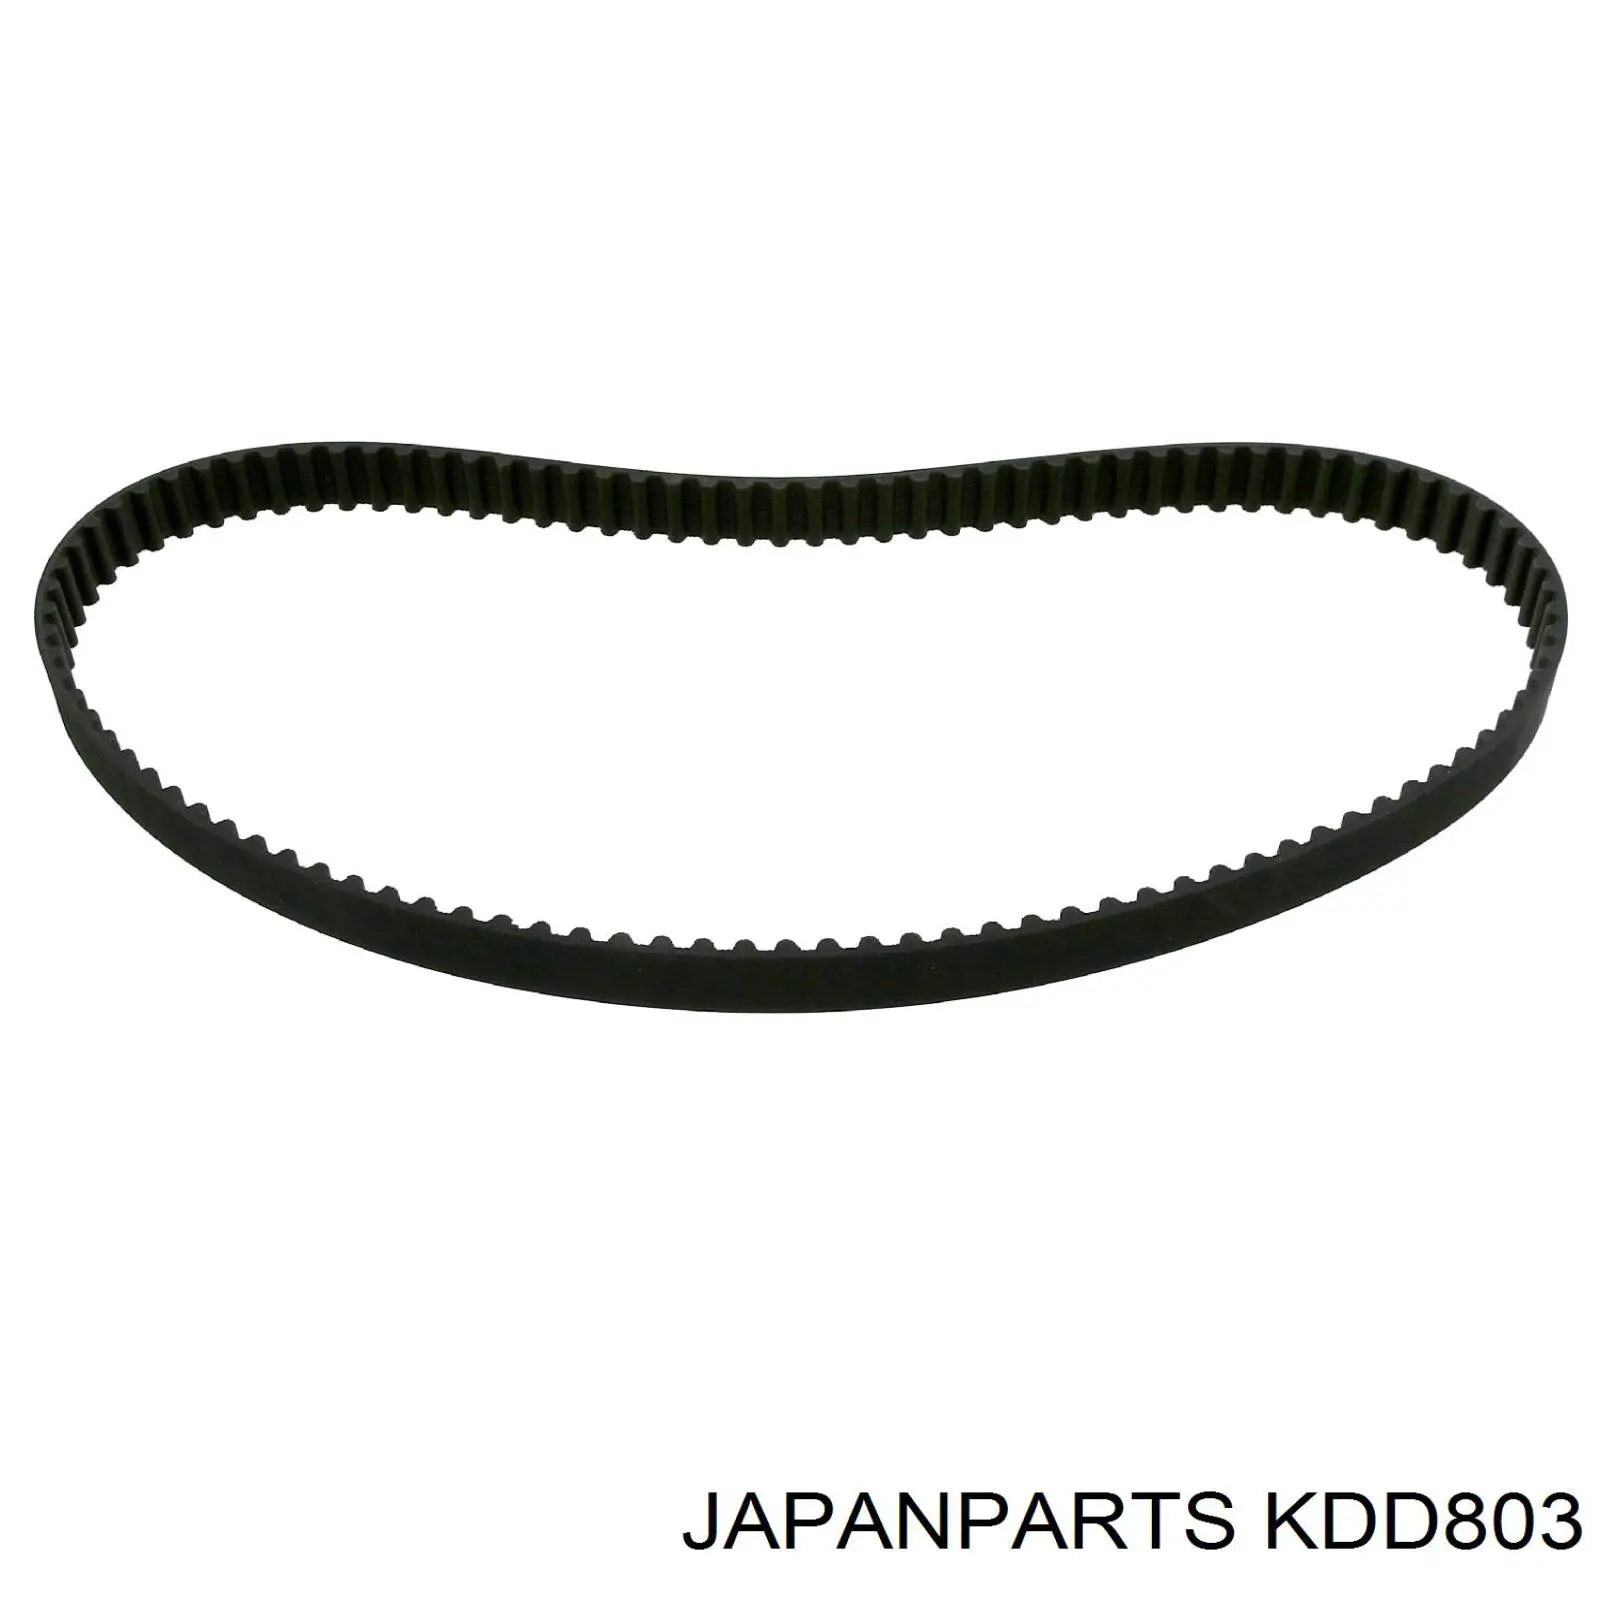 KDD803 Japan Parts kit de correa de distribución